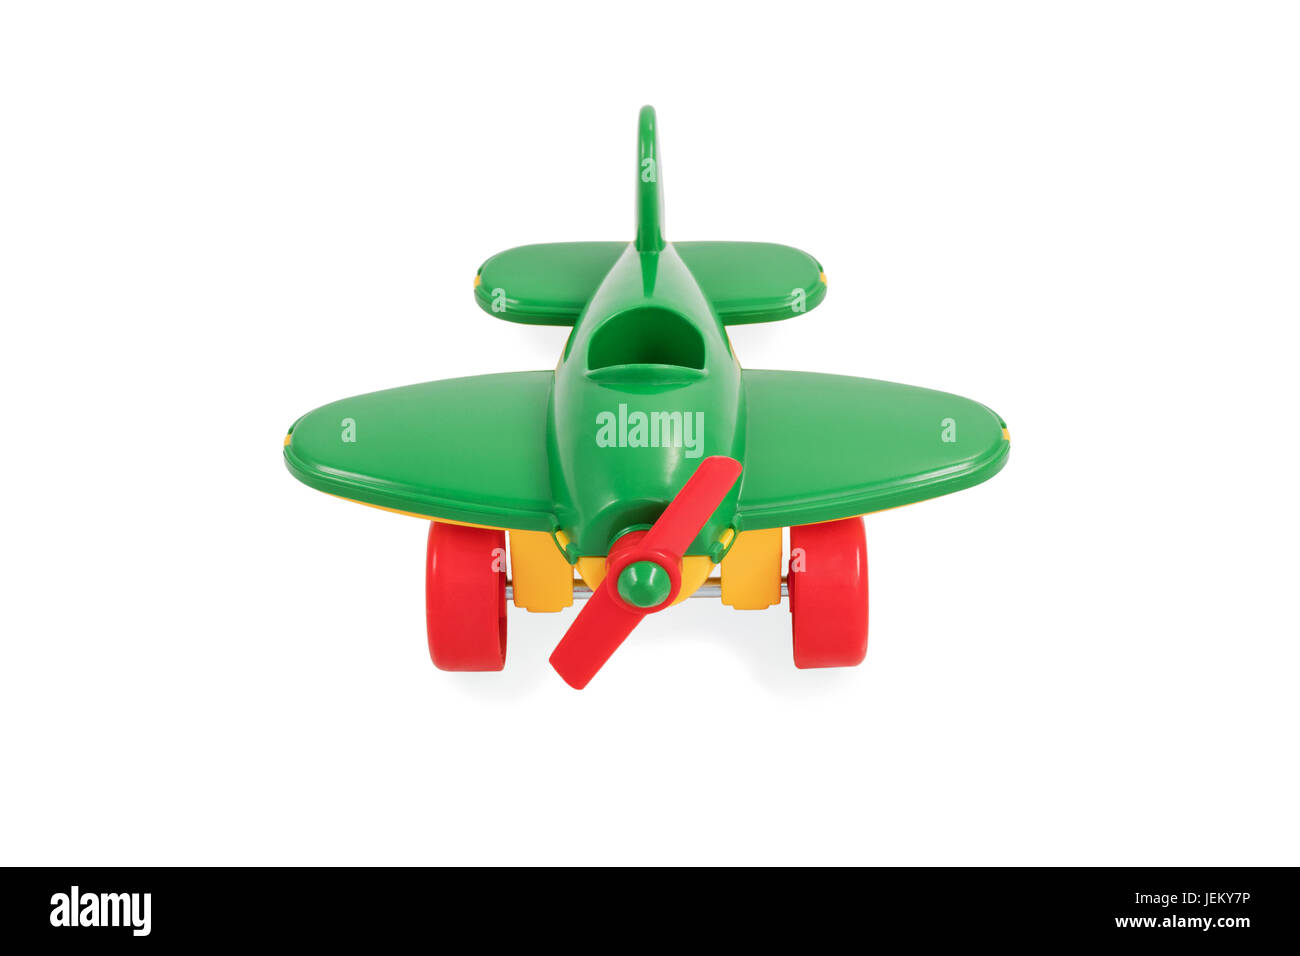 Kinderspielzeug - ein kleines grünes Flugzeug mit einem Propeller ohne  Pilot, isoliert auf weißem Hintergrund Stockfotografie - Alamy